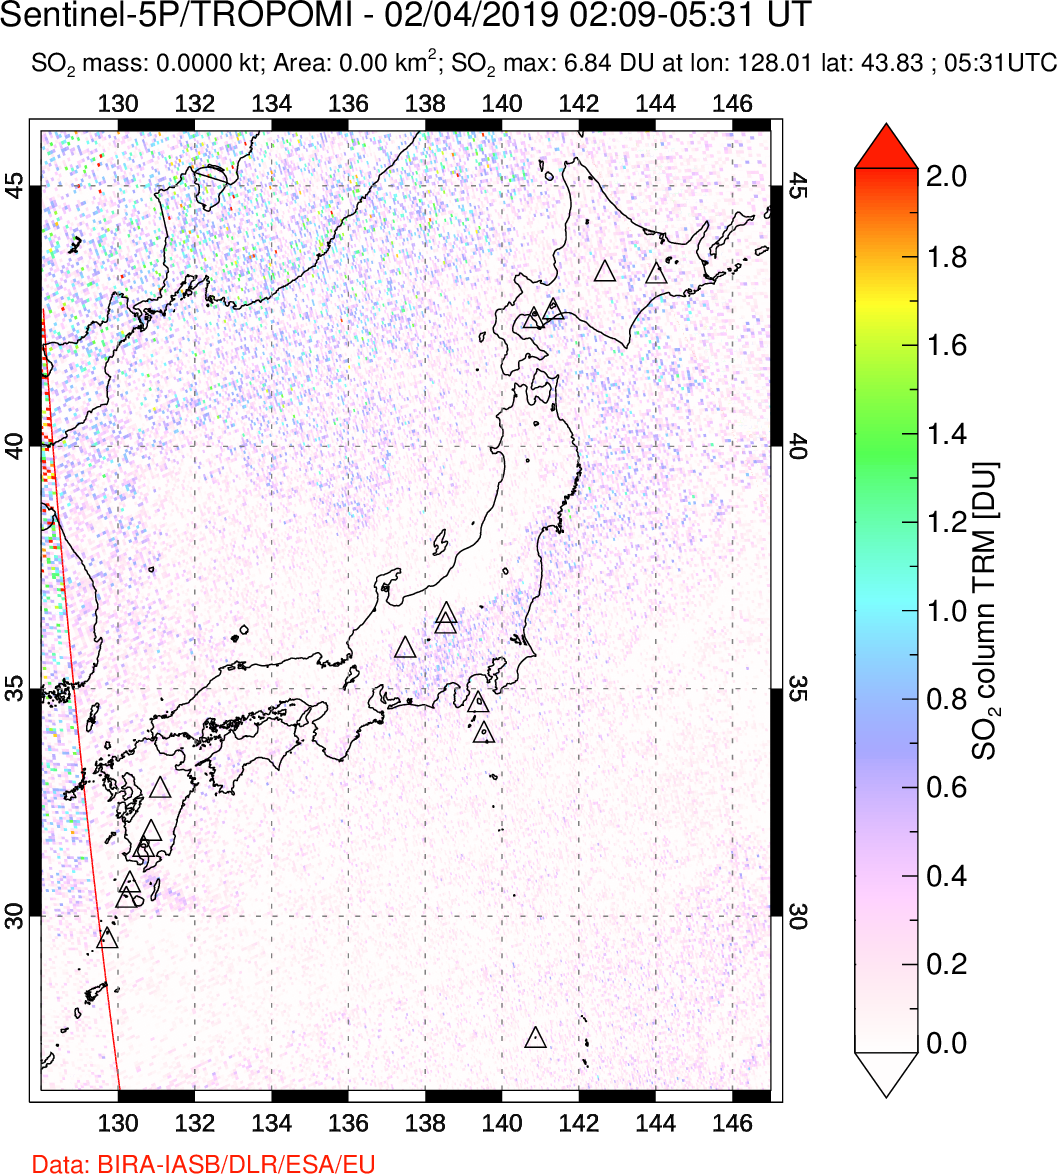 A sulfur dioxide image over Japan on Feb 04, 2019.